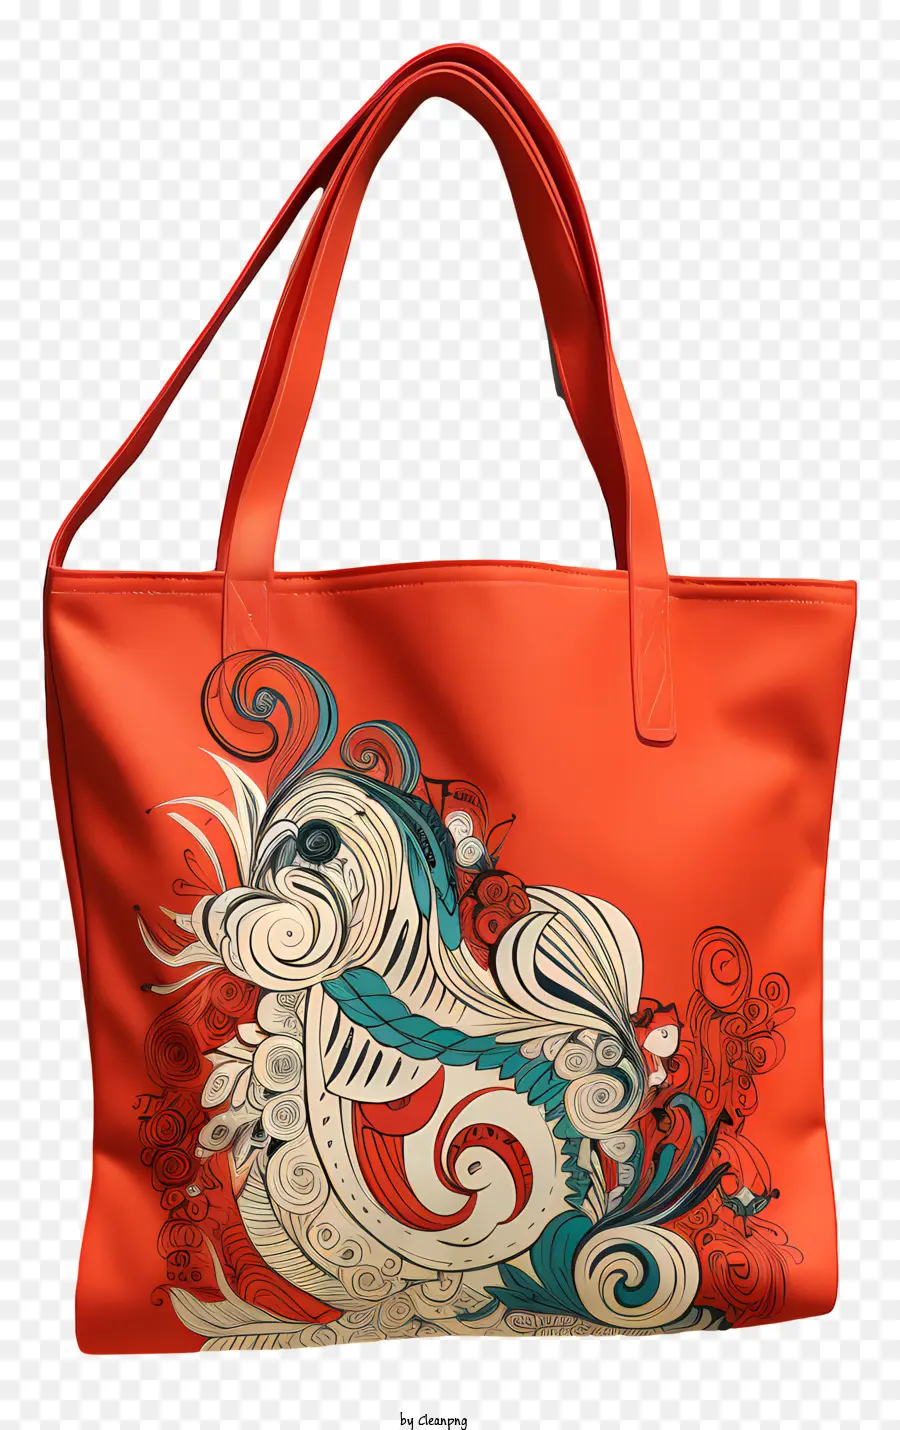 Öko -Einkaufstasche Orange Leder Tasche Swan Design Blau und rotes Schwan Muster Blumiges Design - Orangefarbene Ledertasche mit Schwanbild